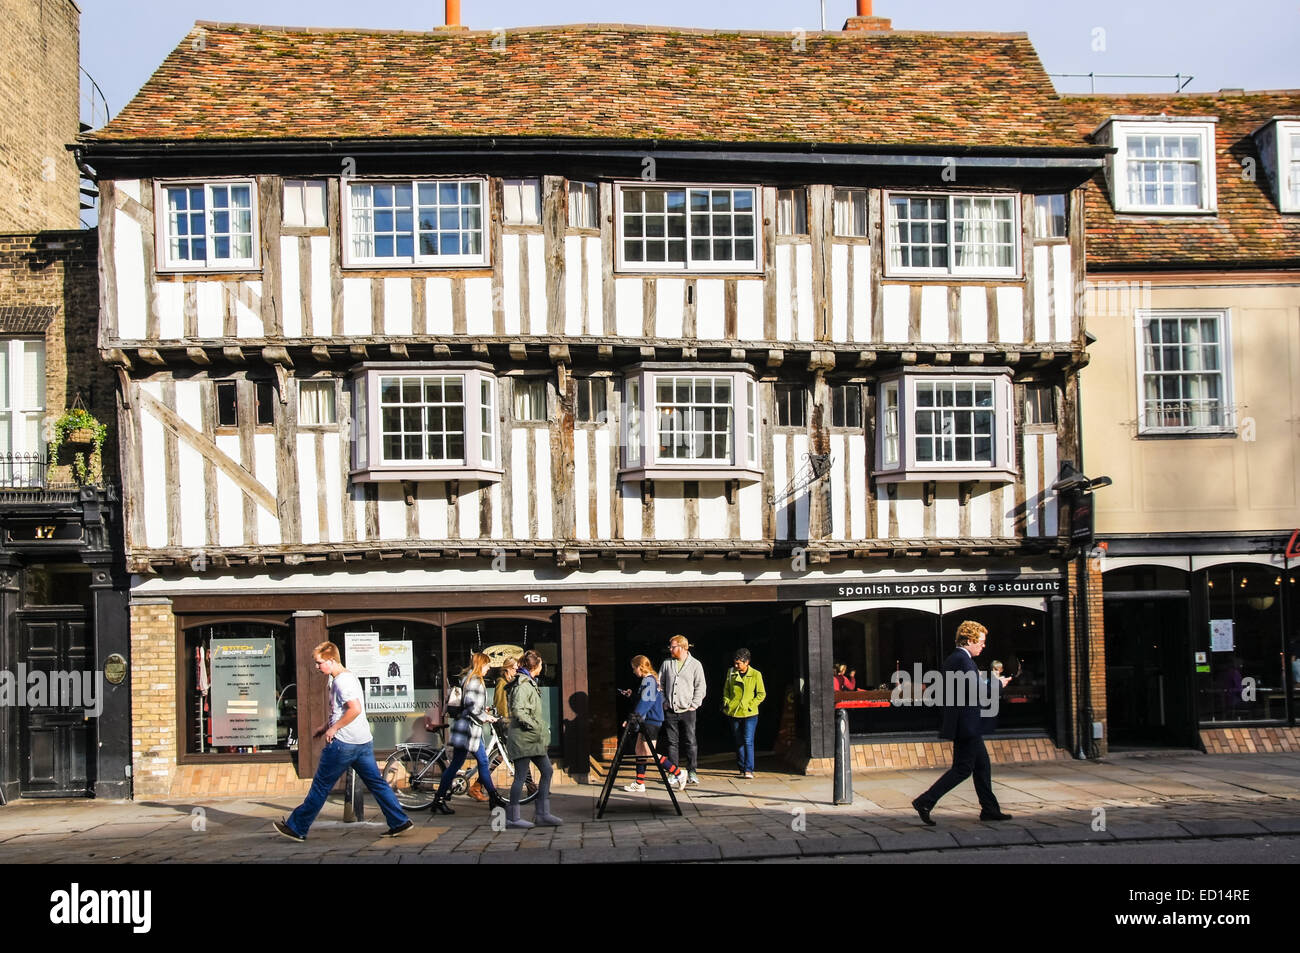 Une maison Tudor à pans de bois sur Bridge Street à Cambridge Cambridgeshire Angleterre Royaume-Uni Royaume-Uni Banque D'Images